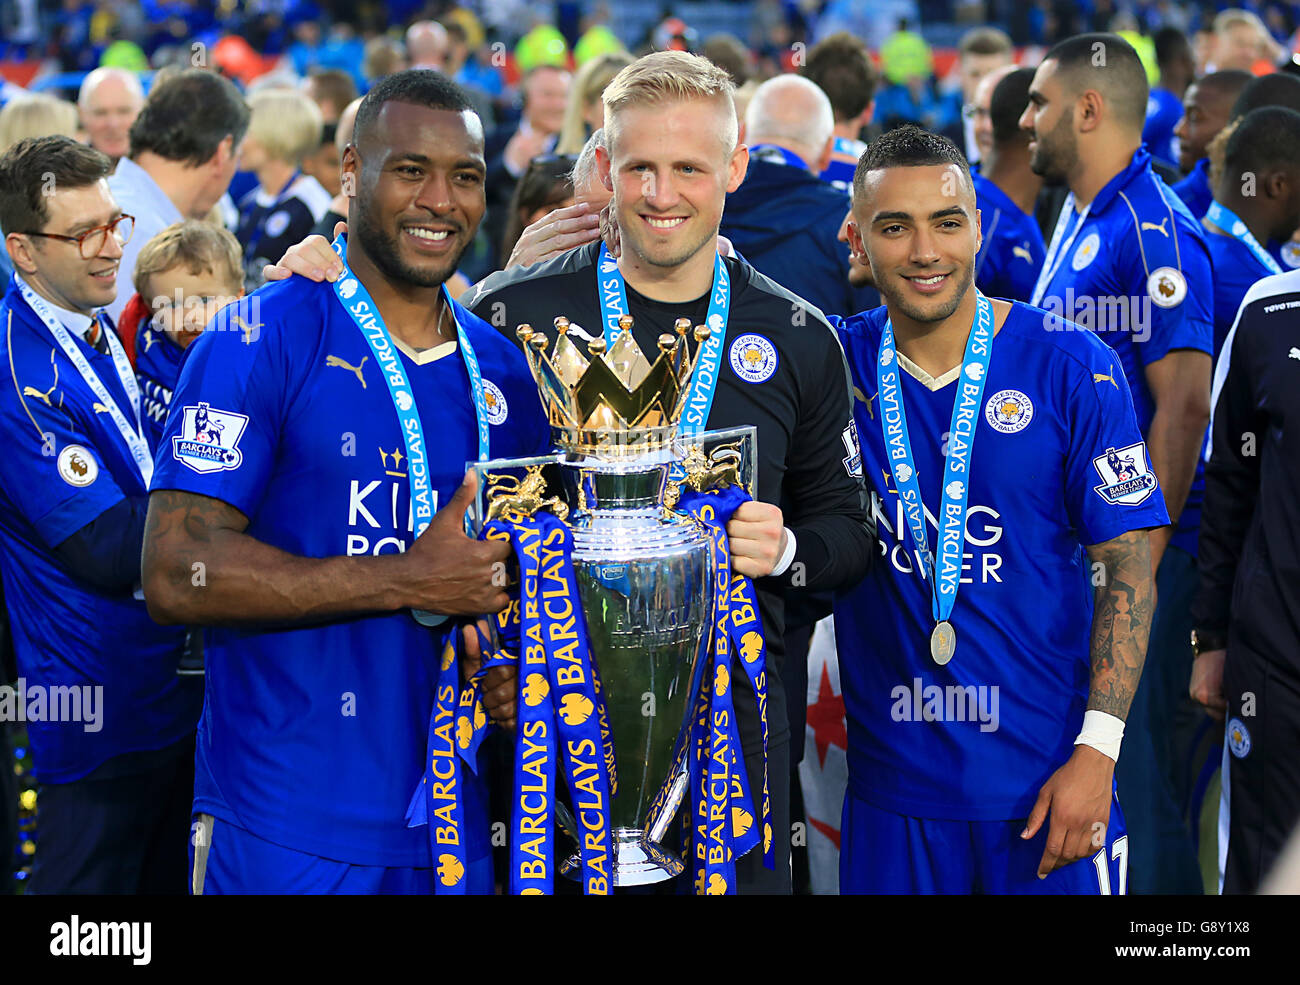 (De gauche à droite) les Wes Morgan de Leicester City, le gardien de but de Leicester City Kasper Schmeichel et Danny Simpson de Leicester City posent avec le trophée Barclays Premier League. Banque D'Images